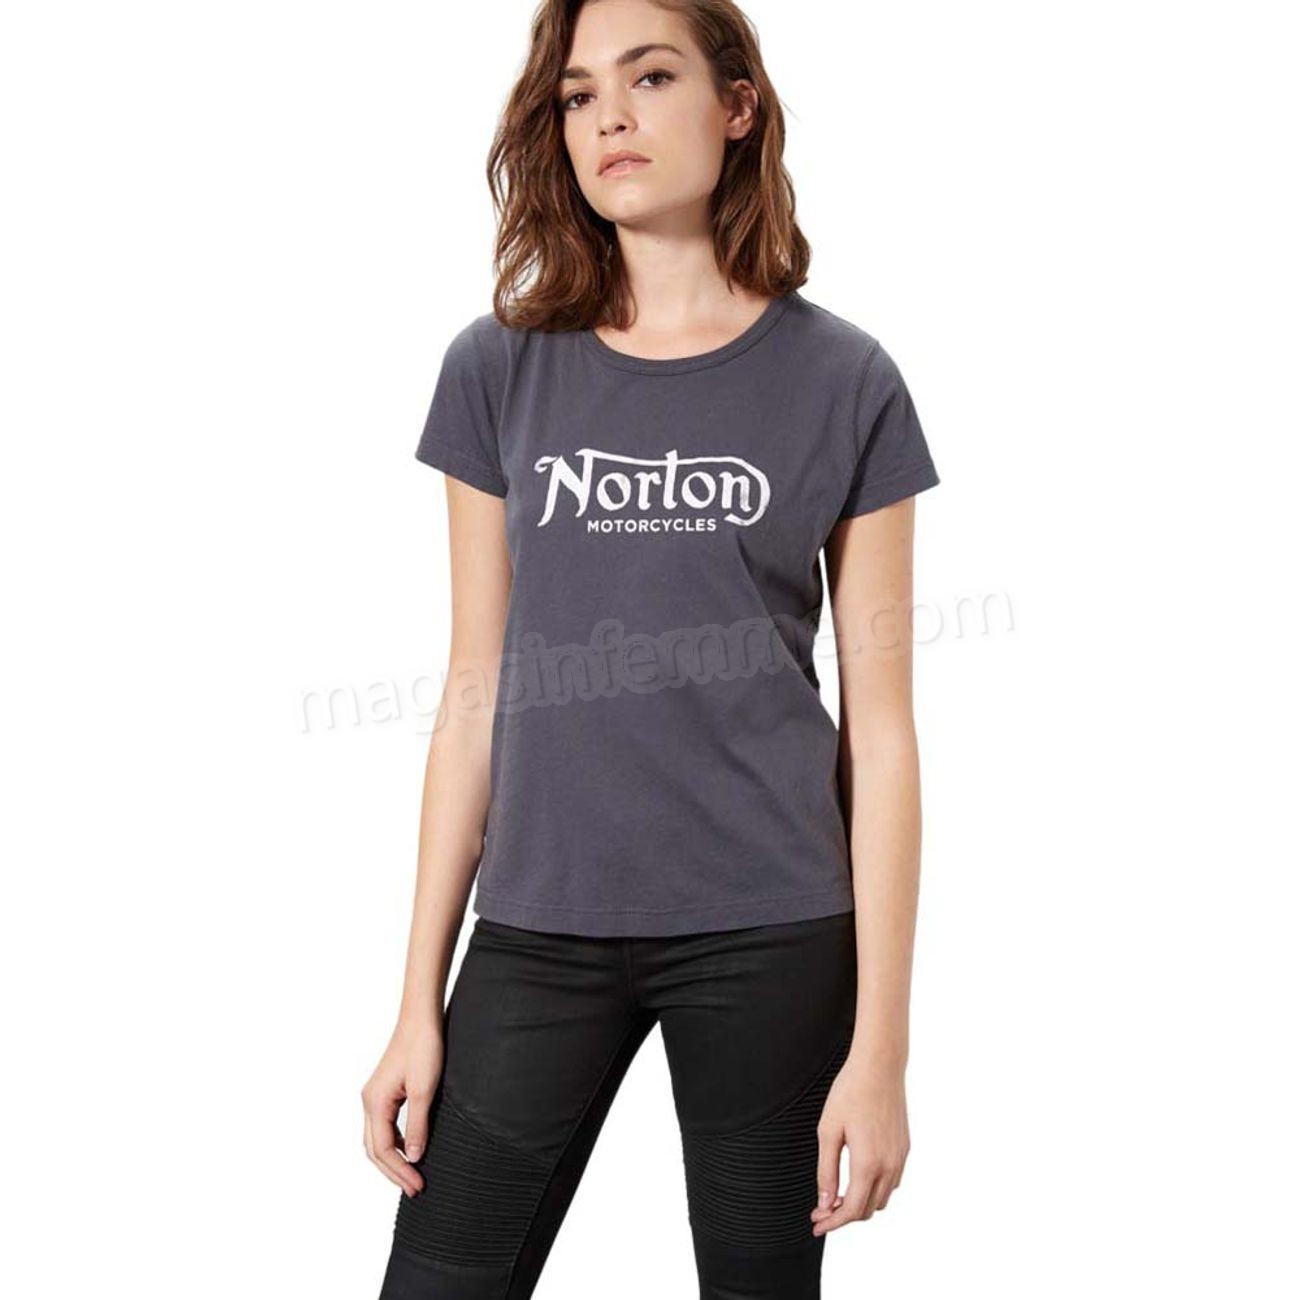 Norton-Mode- Lifestyle femme NORTON Norton Chumps en solde - Norton-Mode- Lifestyle femme NORTON Norton Chumps en solde